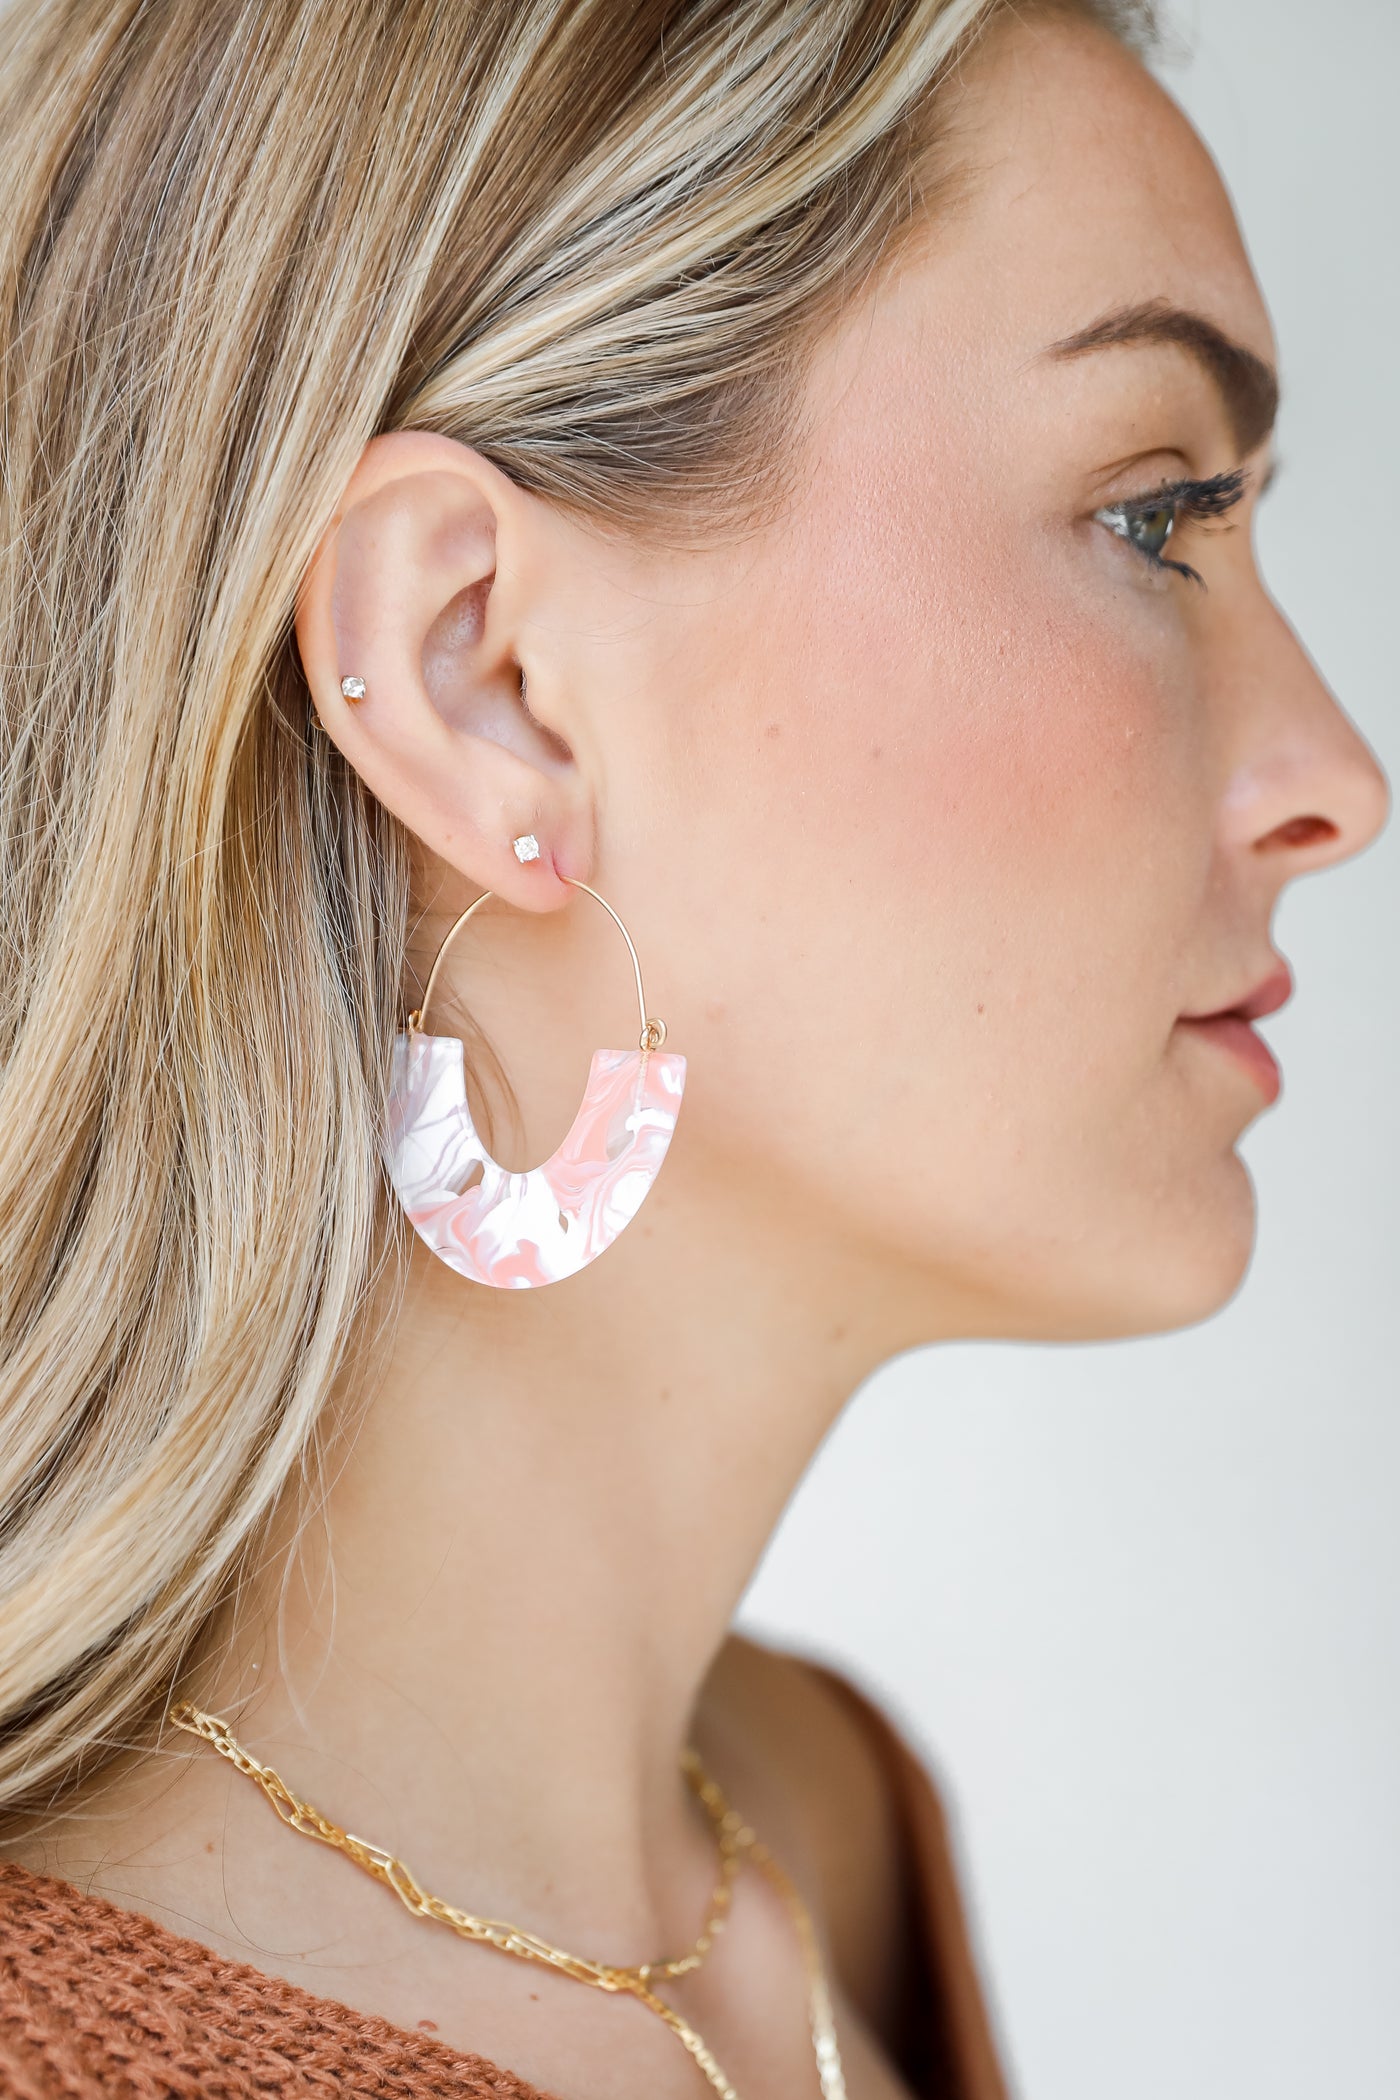 model wearing acrylic earrings